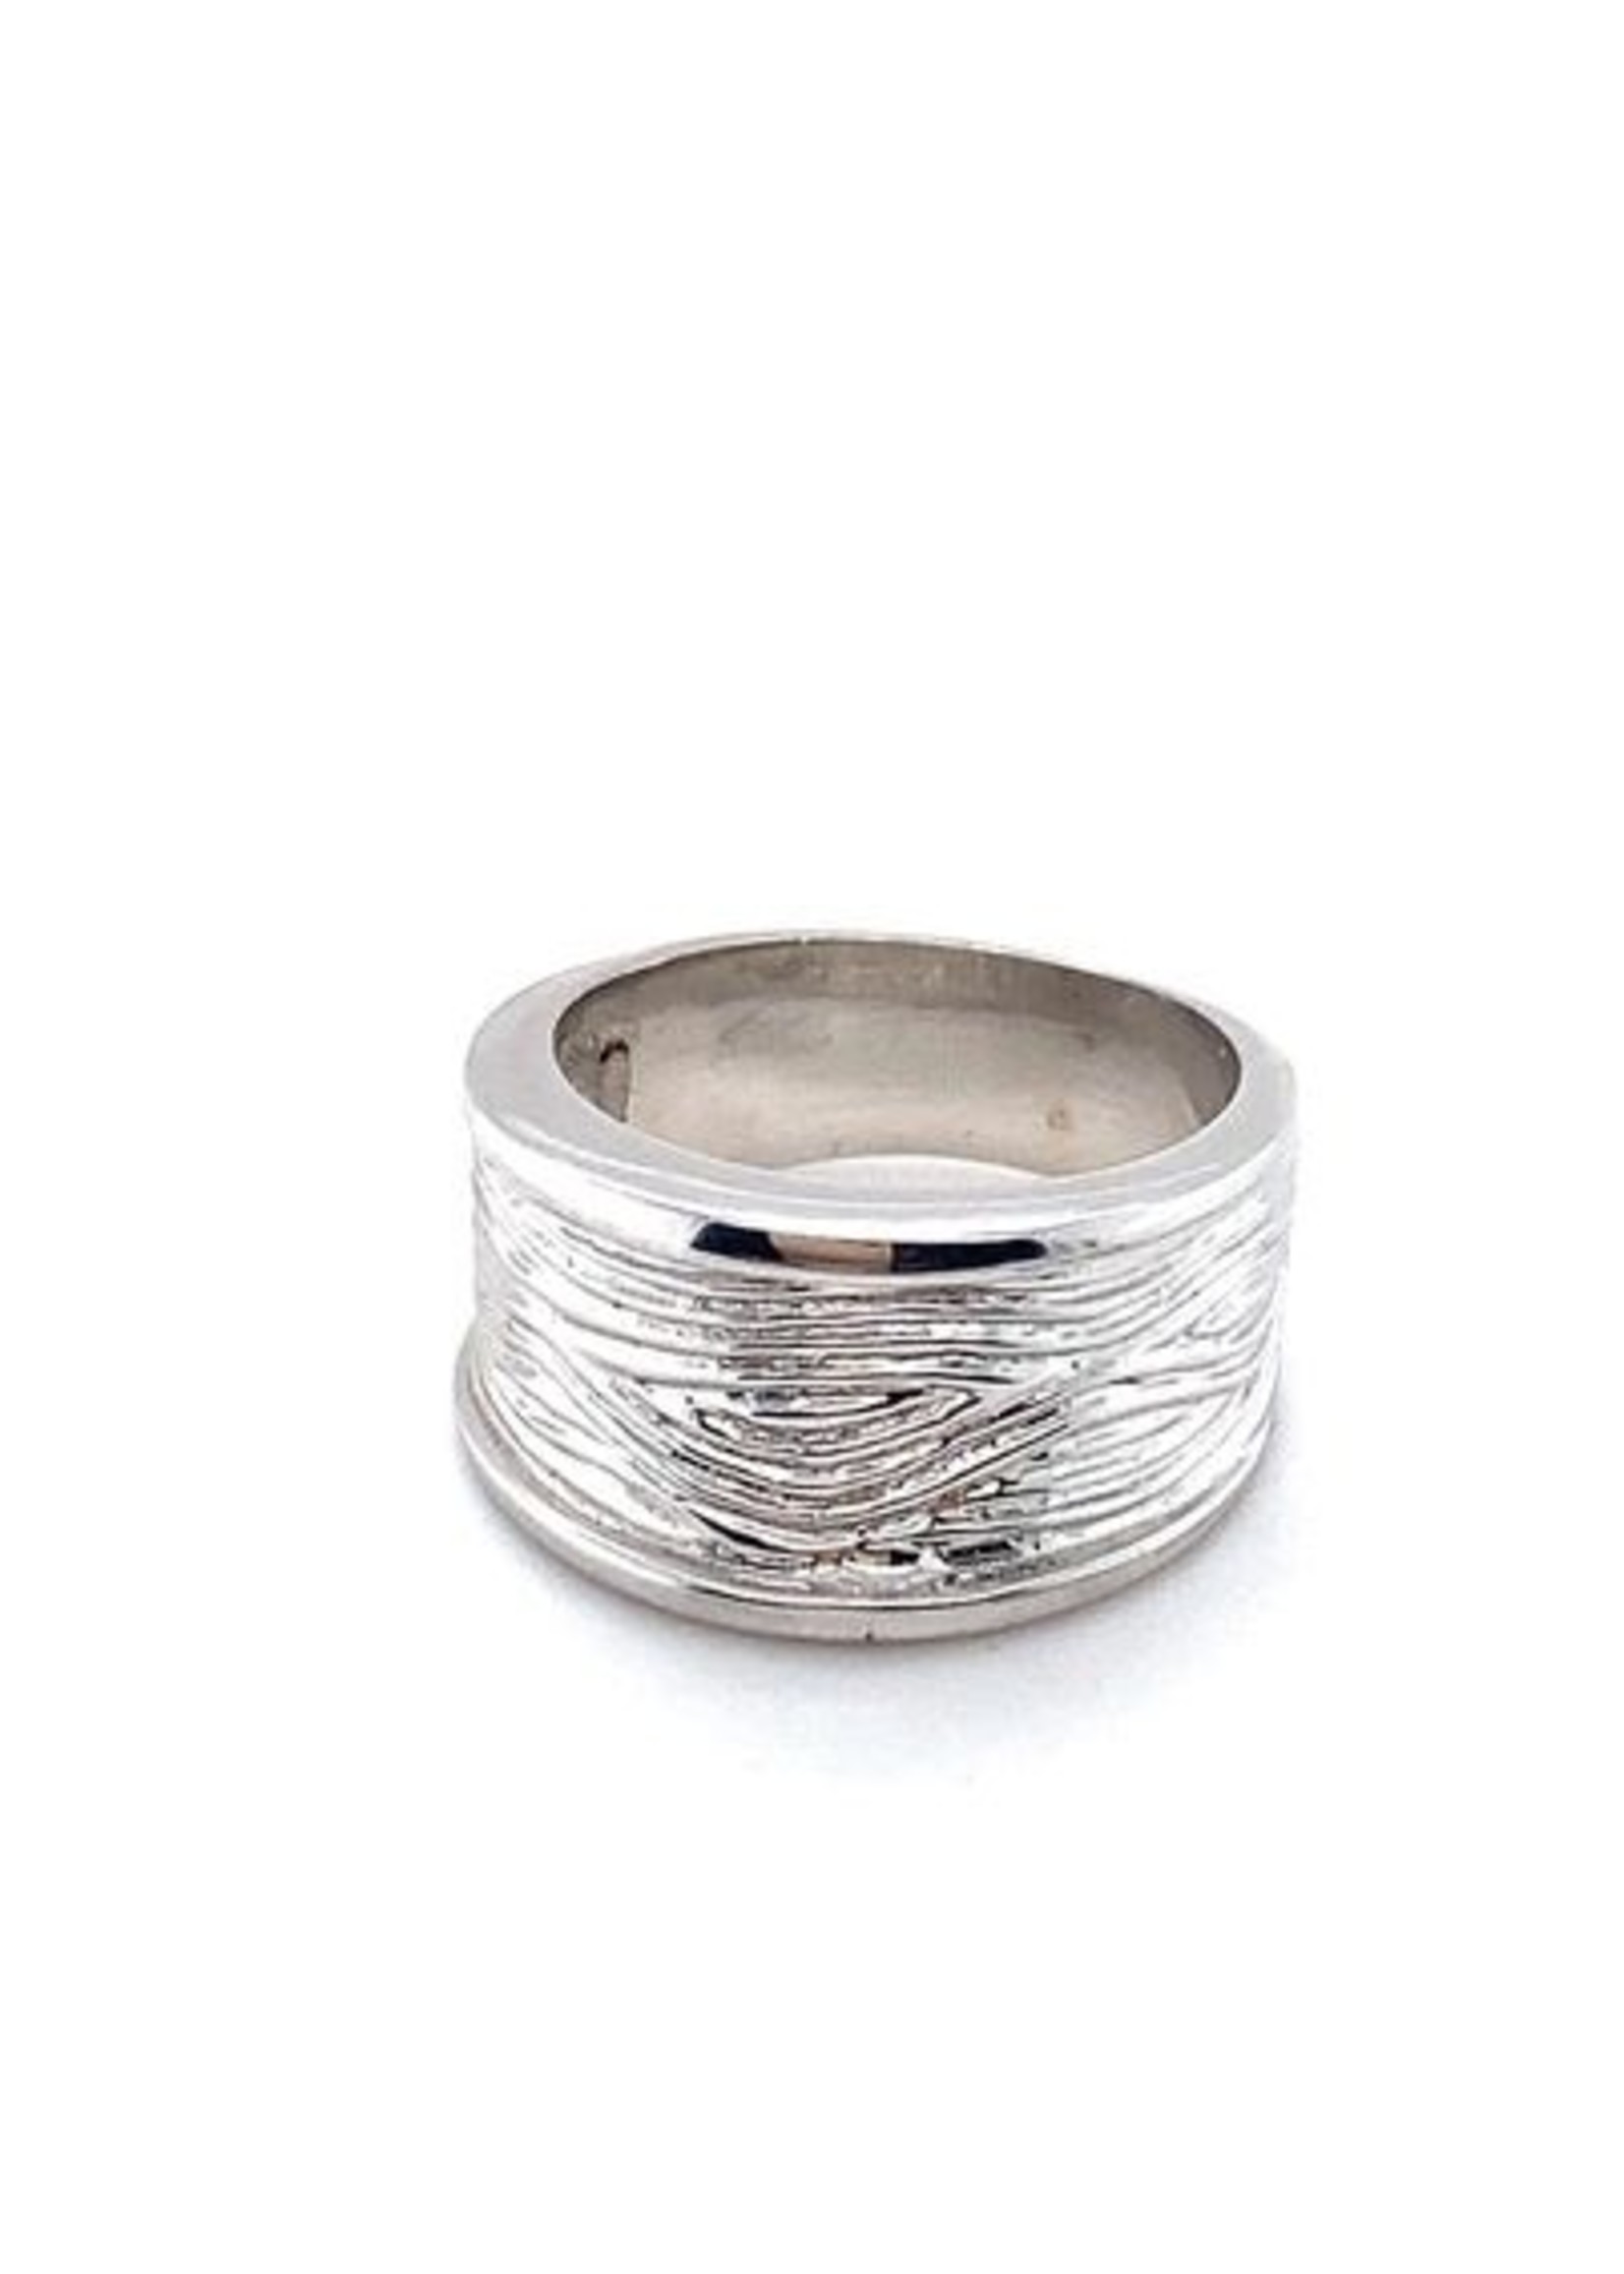 Cataleya jewels Zilveren brede ring met golfjes patroon maat 15 3/4